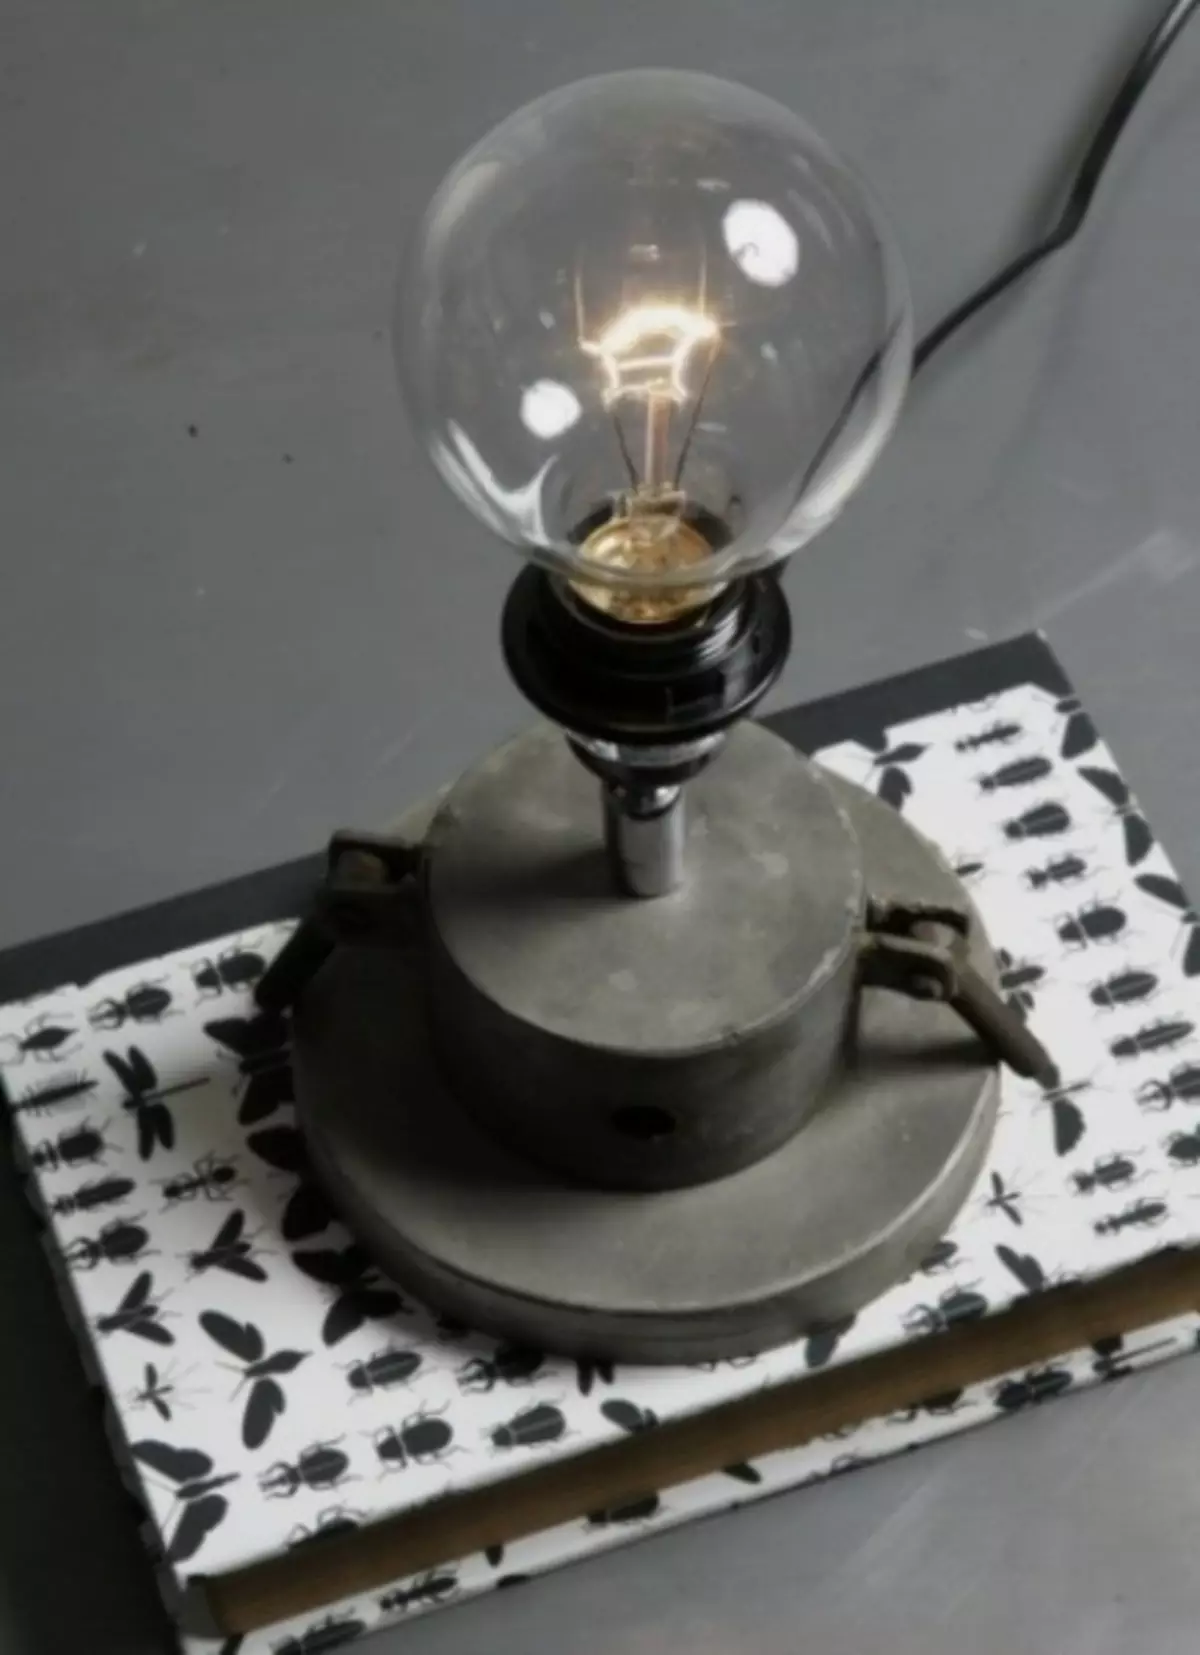 50 billeder af lamper i industriel stil